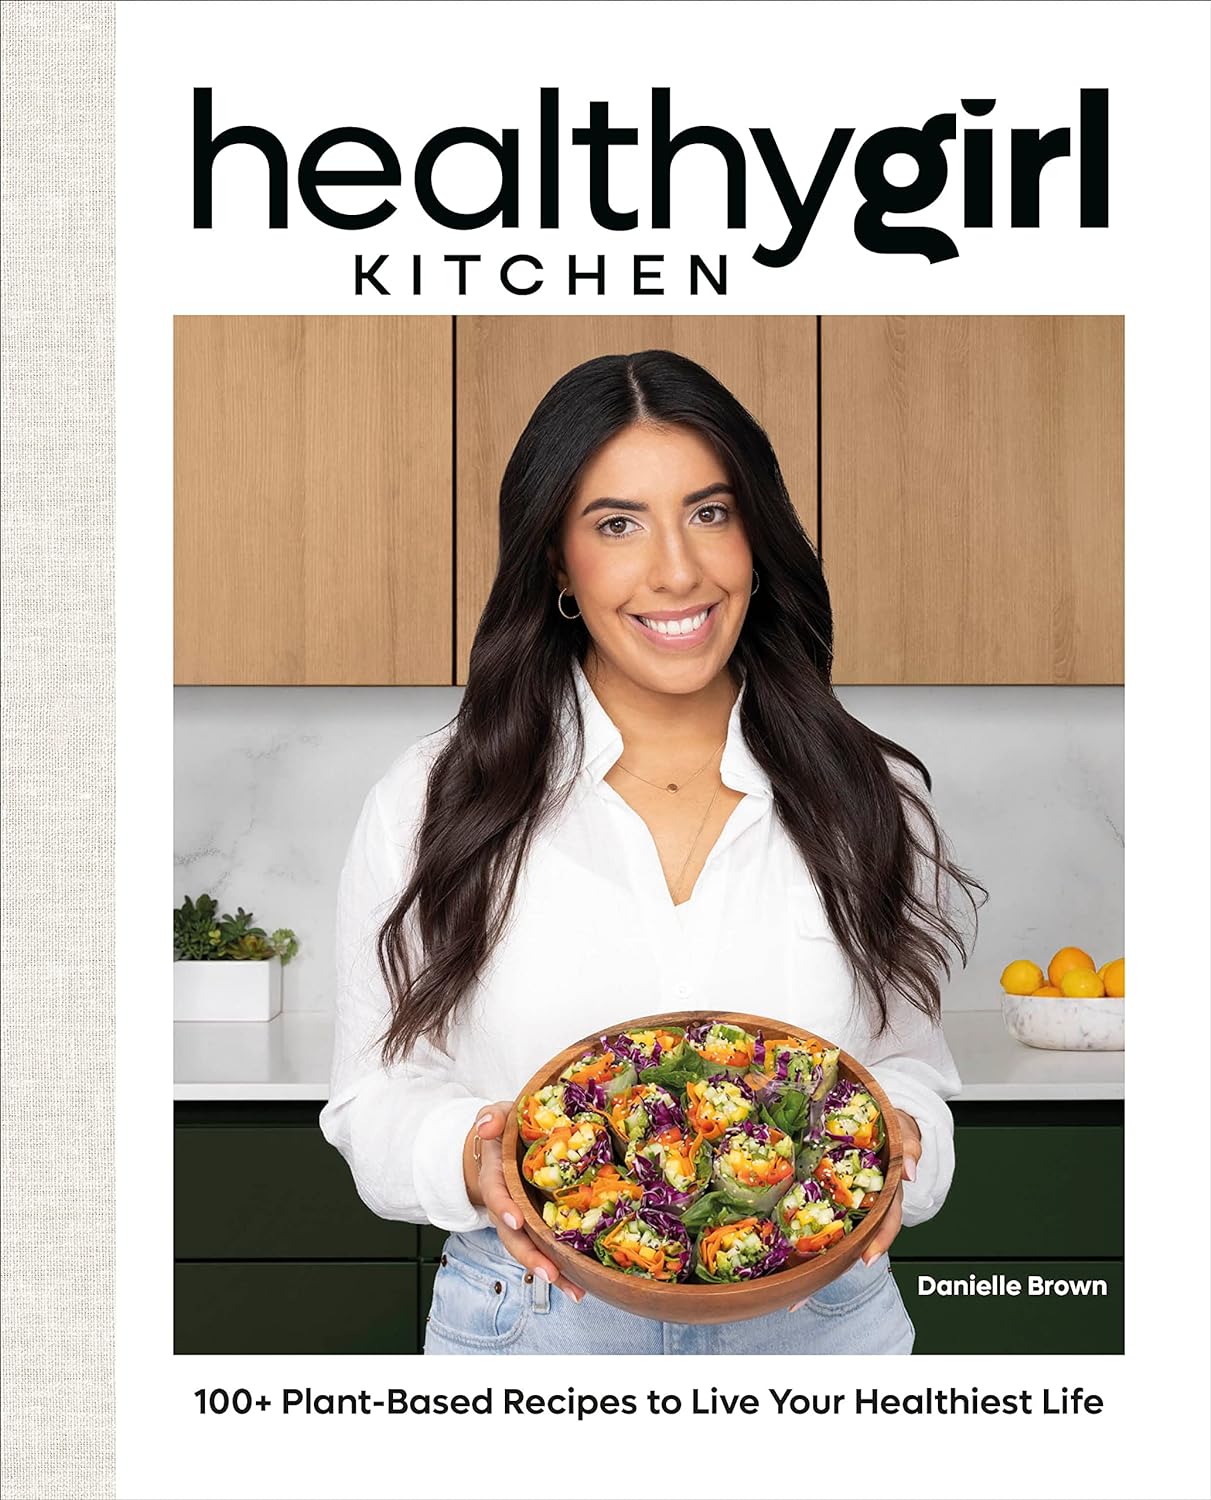 VegNews.healthygirlkitchencookbook